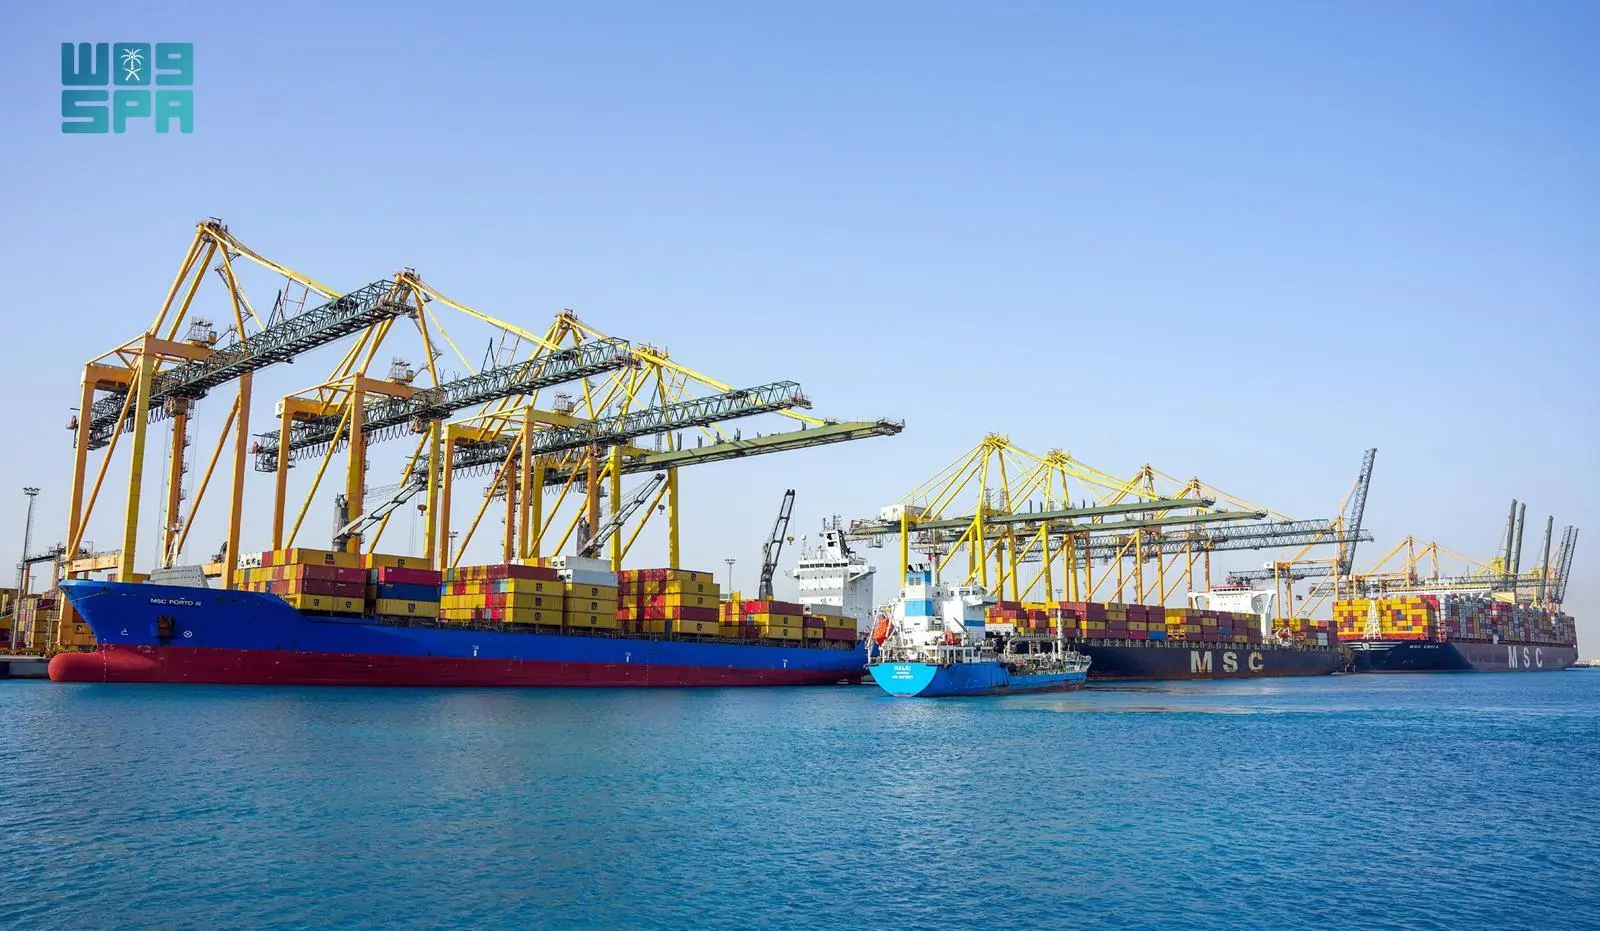 ميناء الملك عبدالله يعقد شراكات إستراتيجية لتعزيز خدماته البحرية